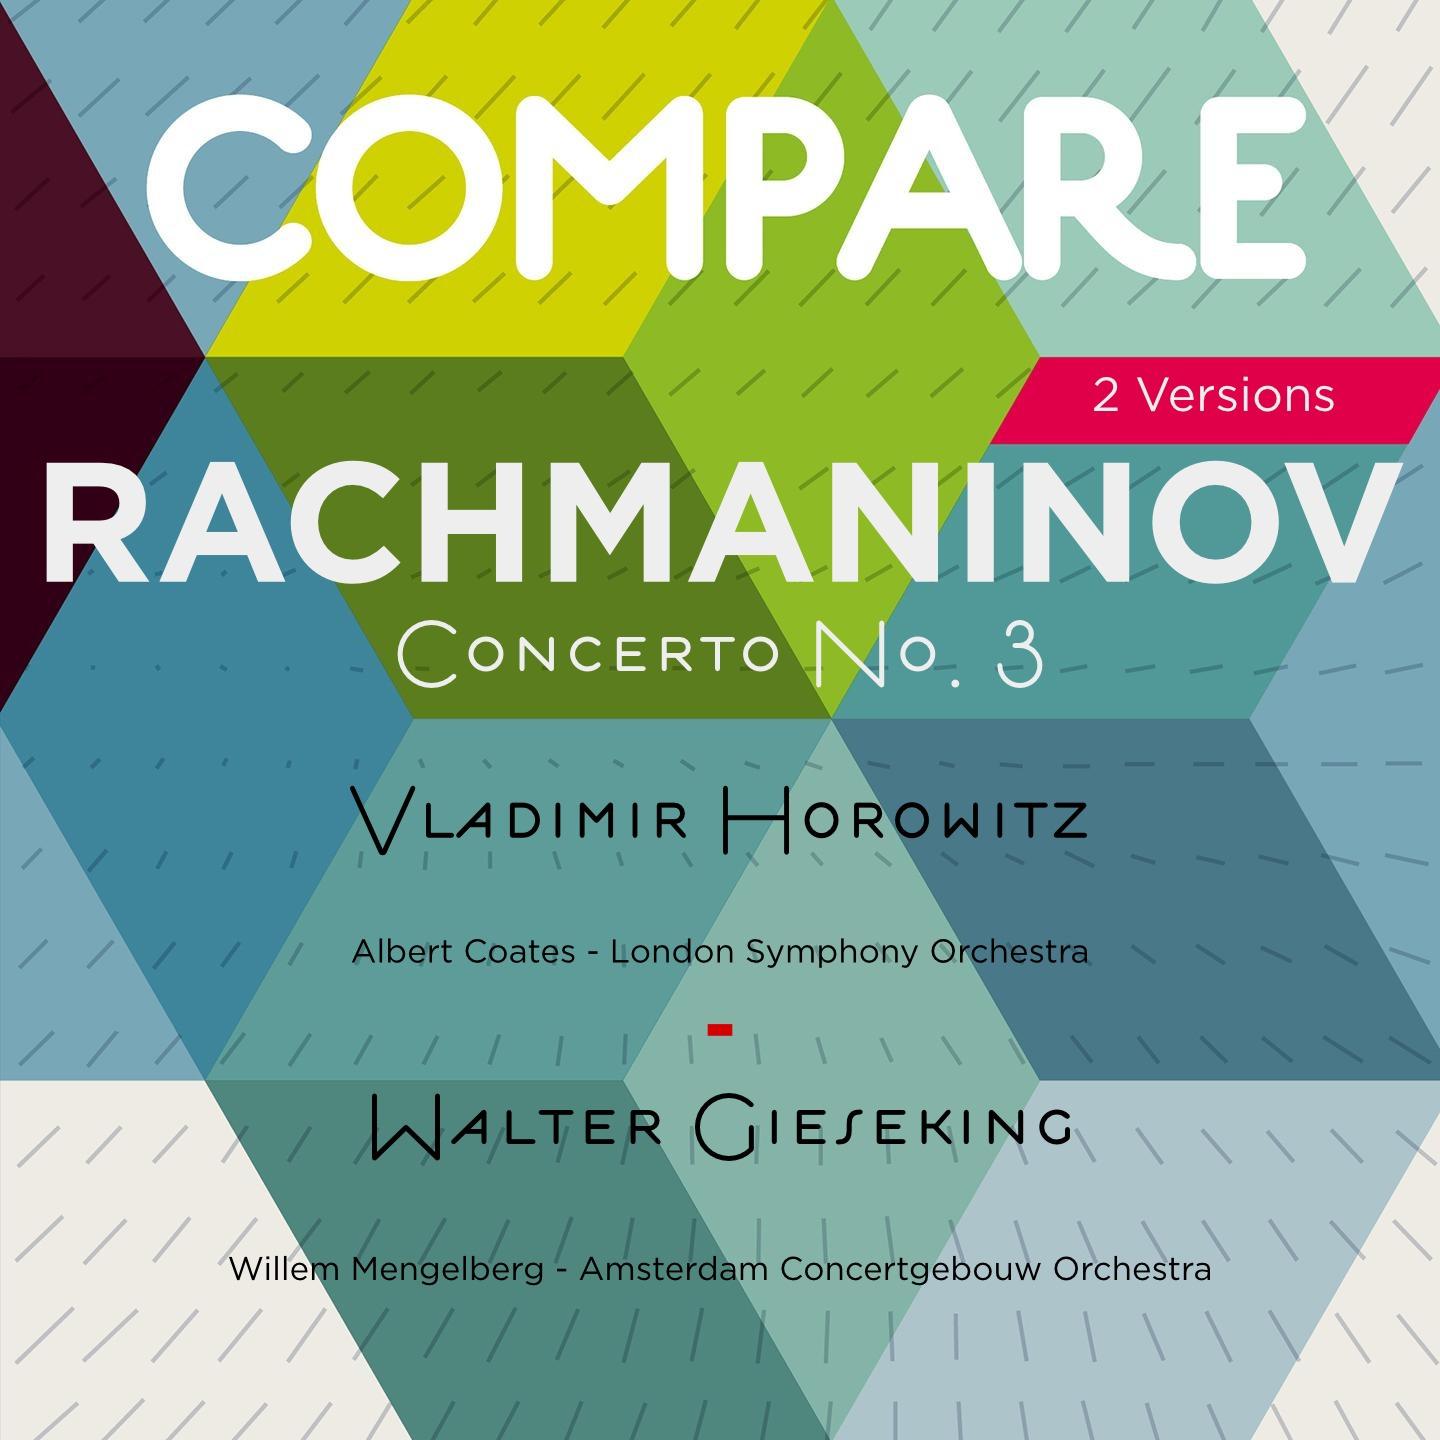 Rachmaninoff: Piano Concerto No. 3, Vladimir Horowitz vs. Walter Gieseking (Compare 2 Versions)